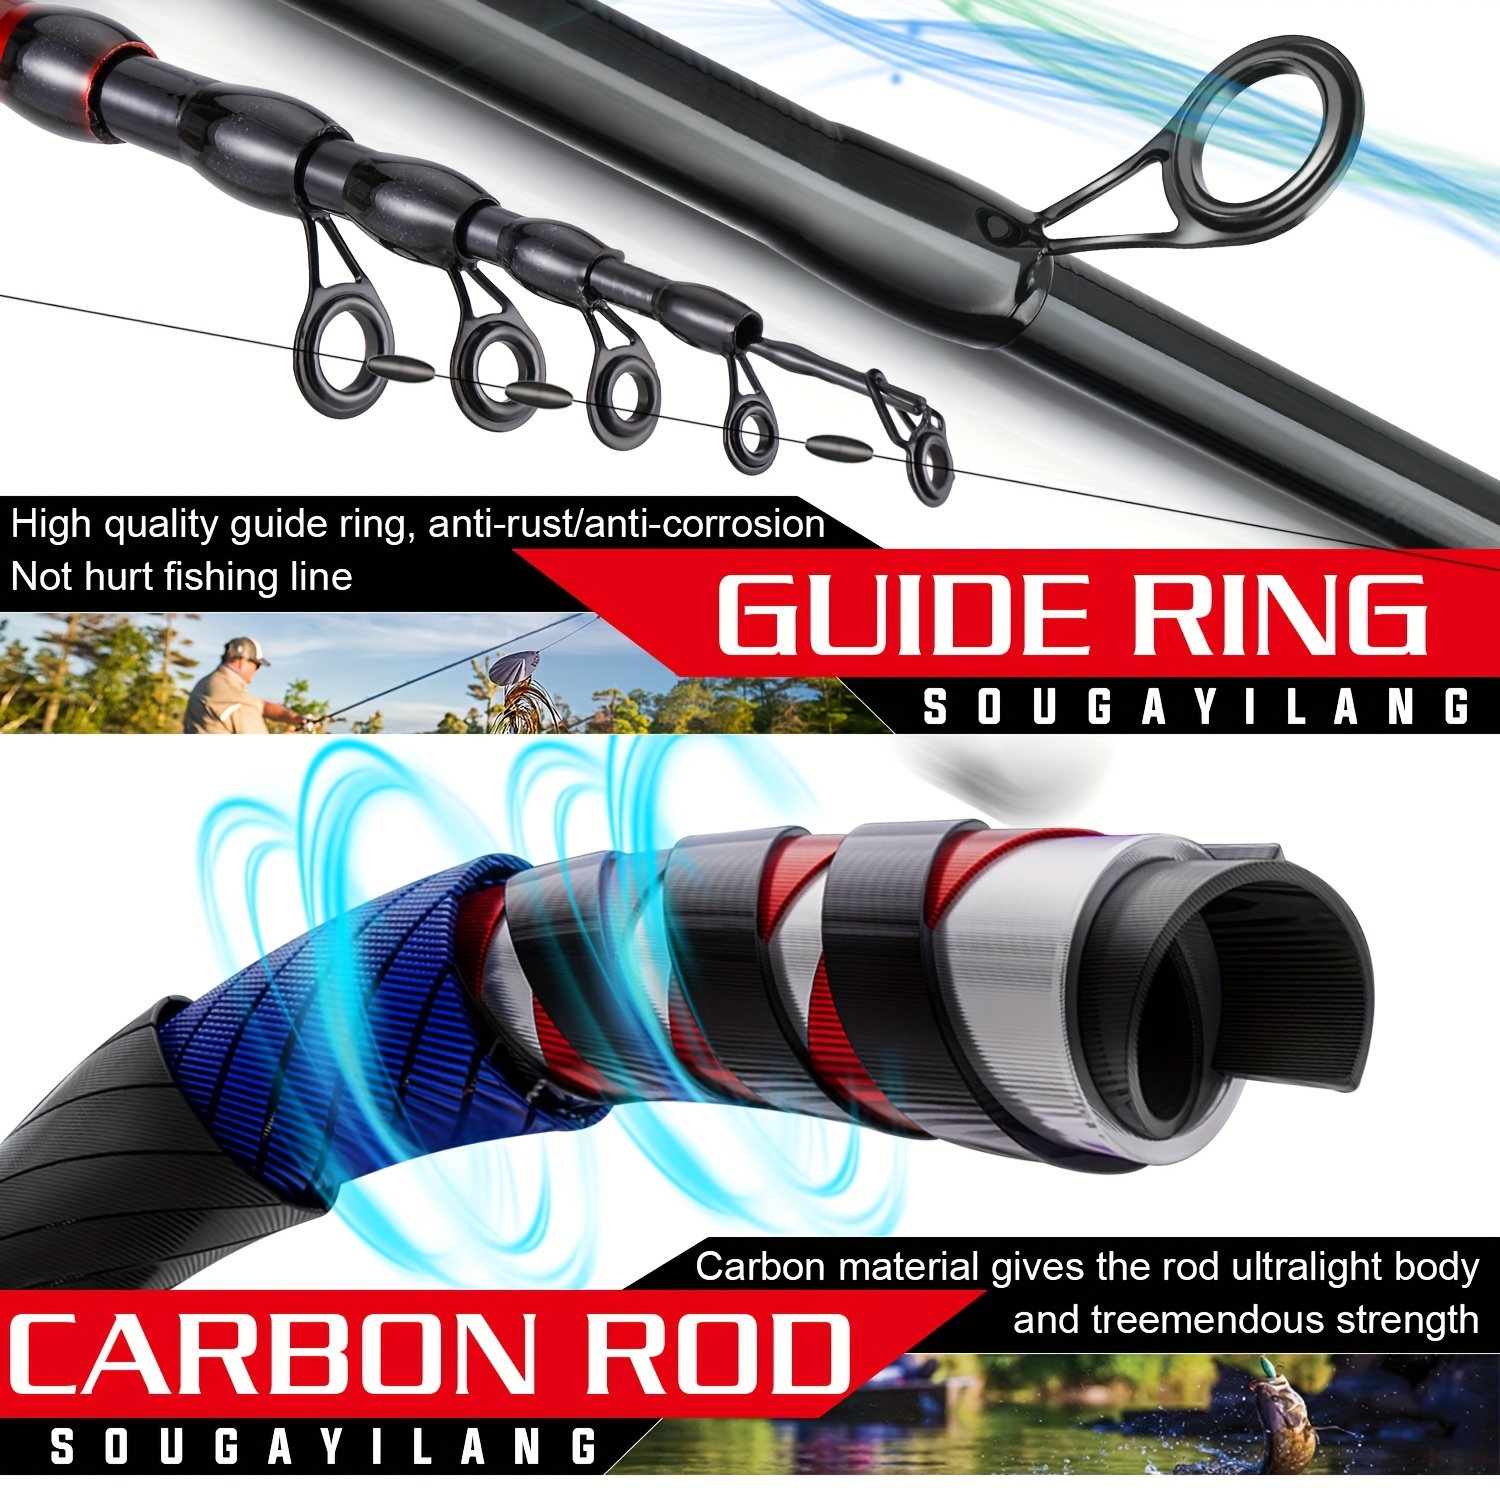 Fishing Pole Kit Telescopic Carbon Fishing Rod Reel Combo - Temu